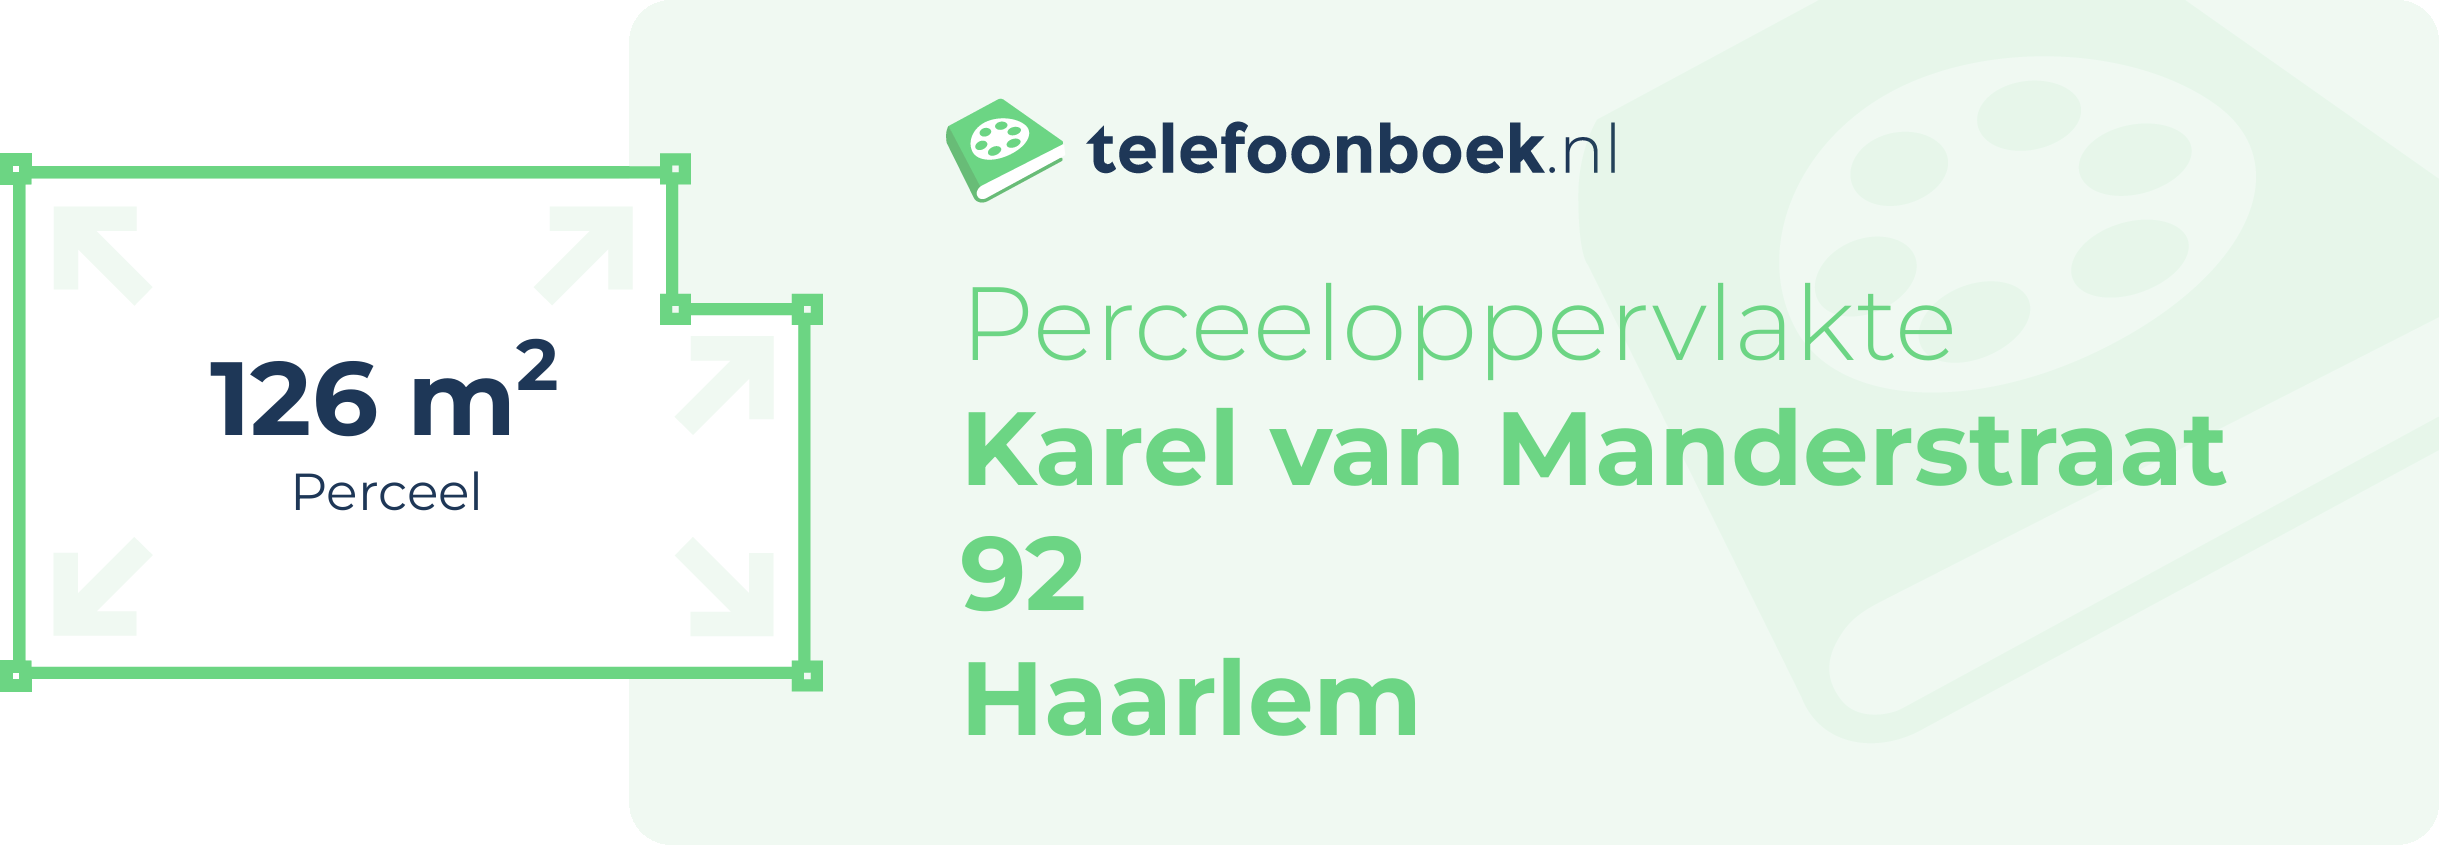 Perceeloppervlakte Karel Van Manderstraat 92 Haarlem